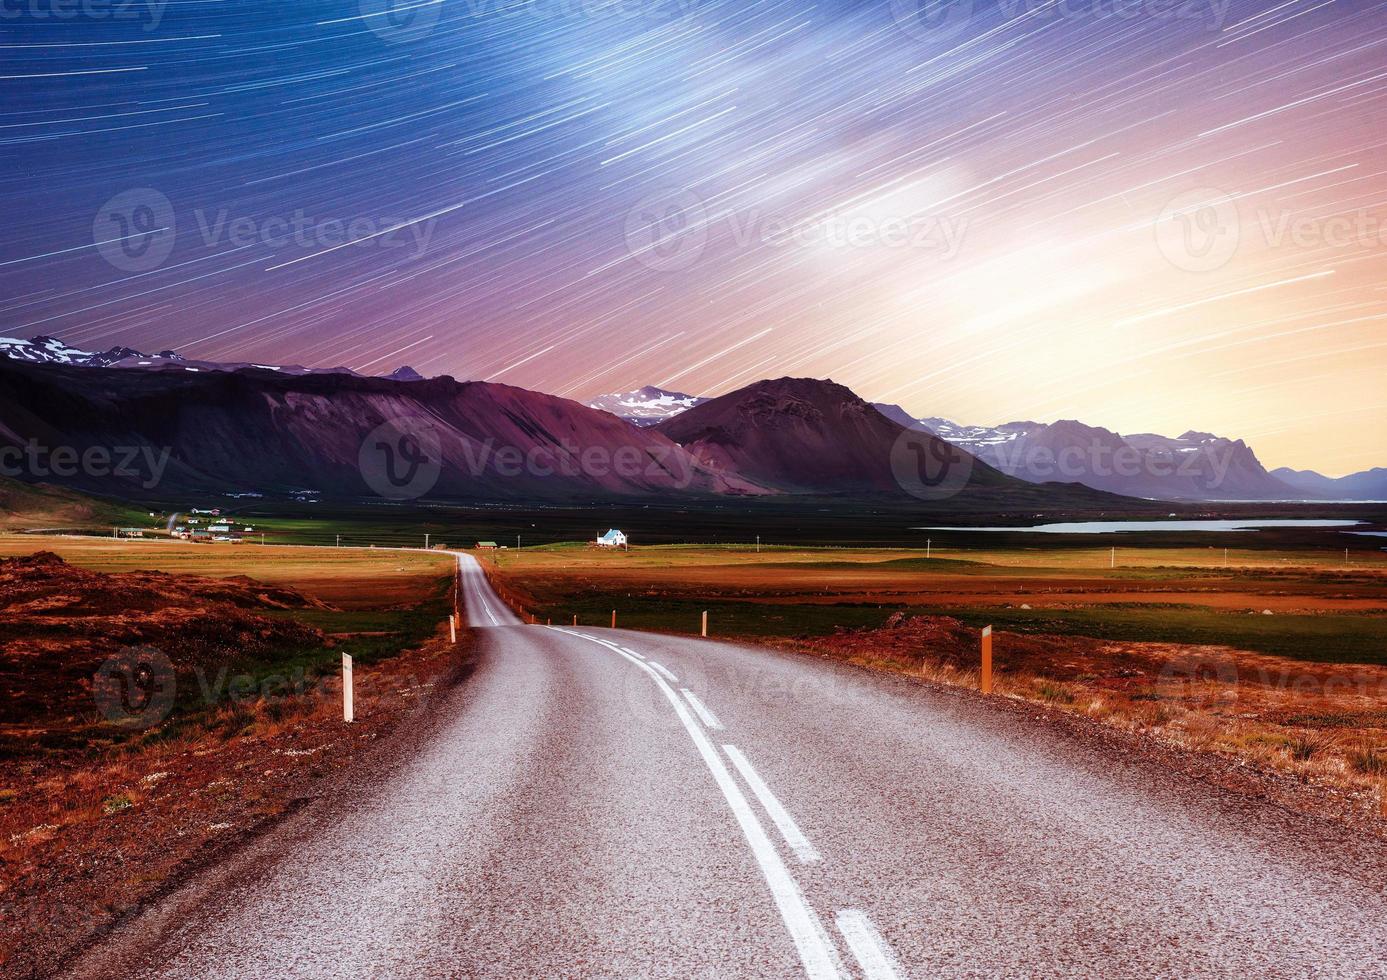 céu estrelado sobre as montanhas. a estrada de asfalto com marcações brancas. bela paisagem de verão. efeito de filtragem suave. Islândia foto